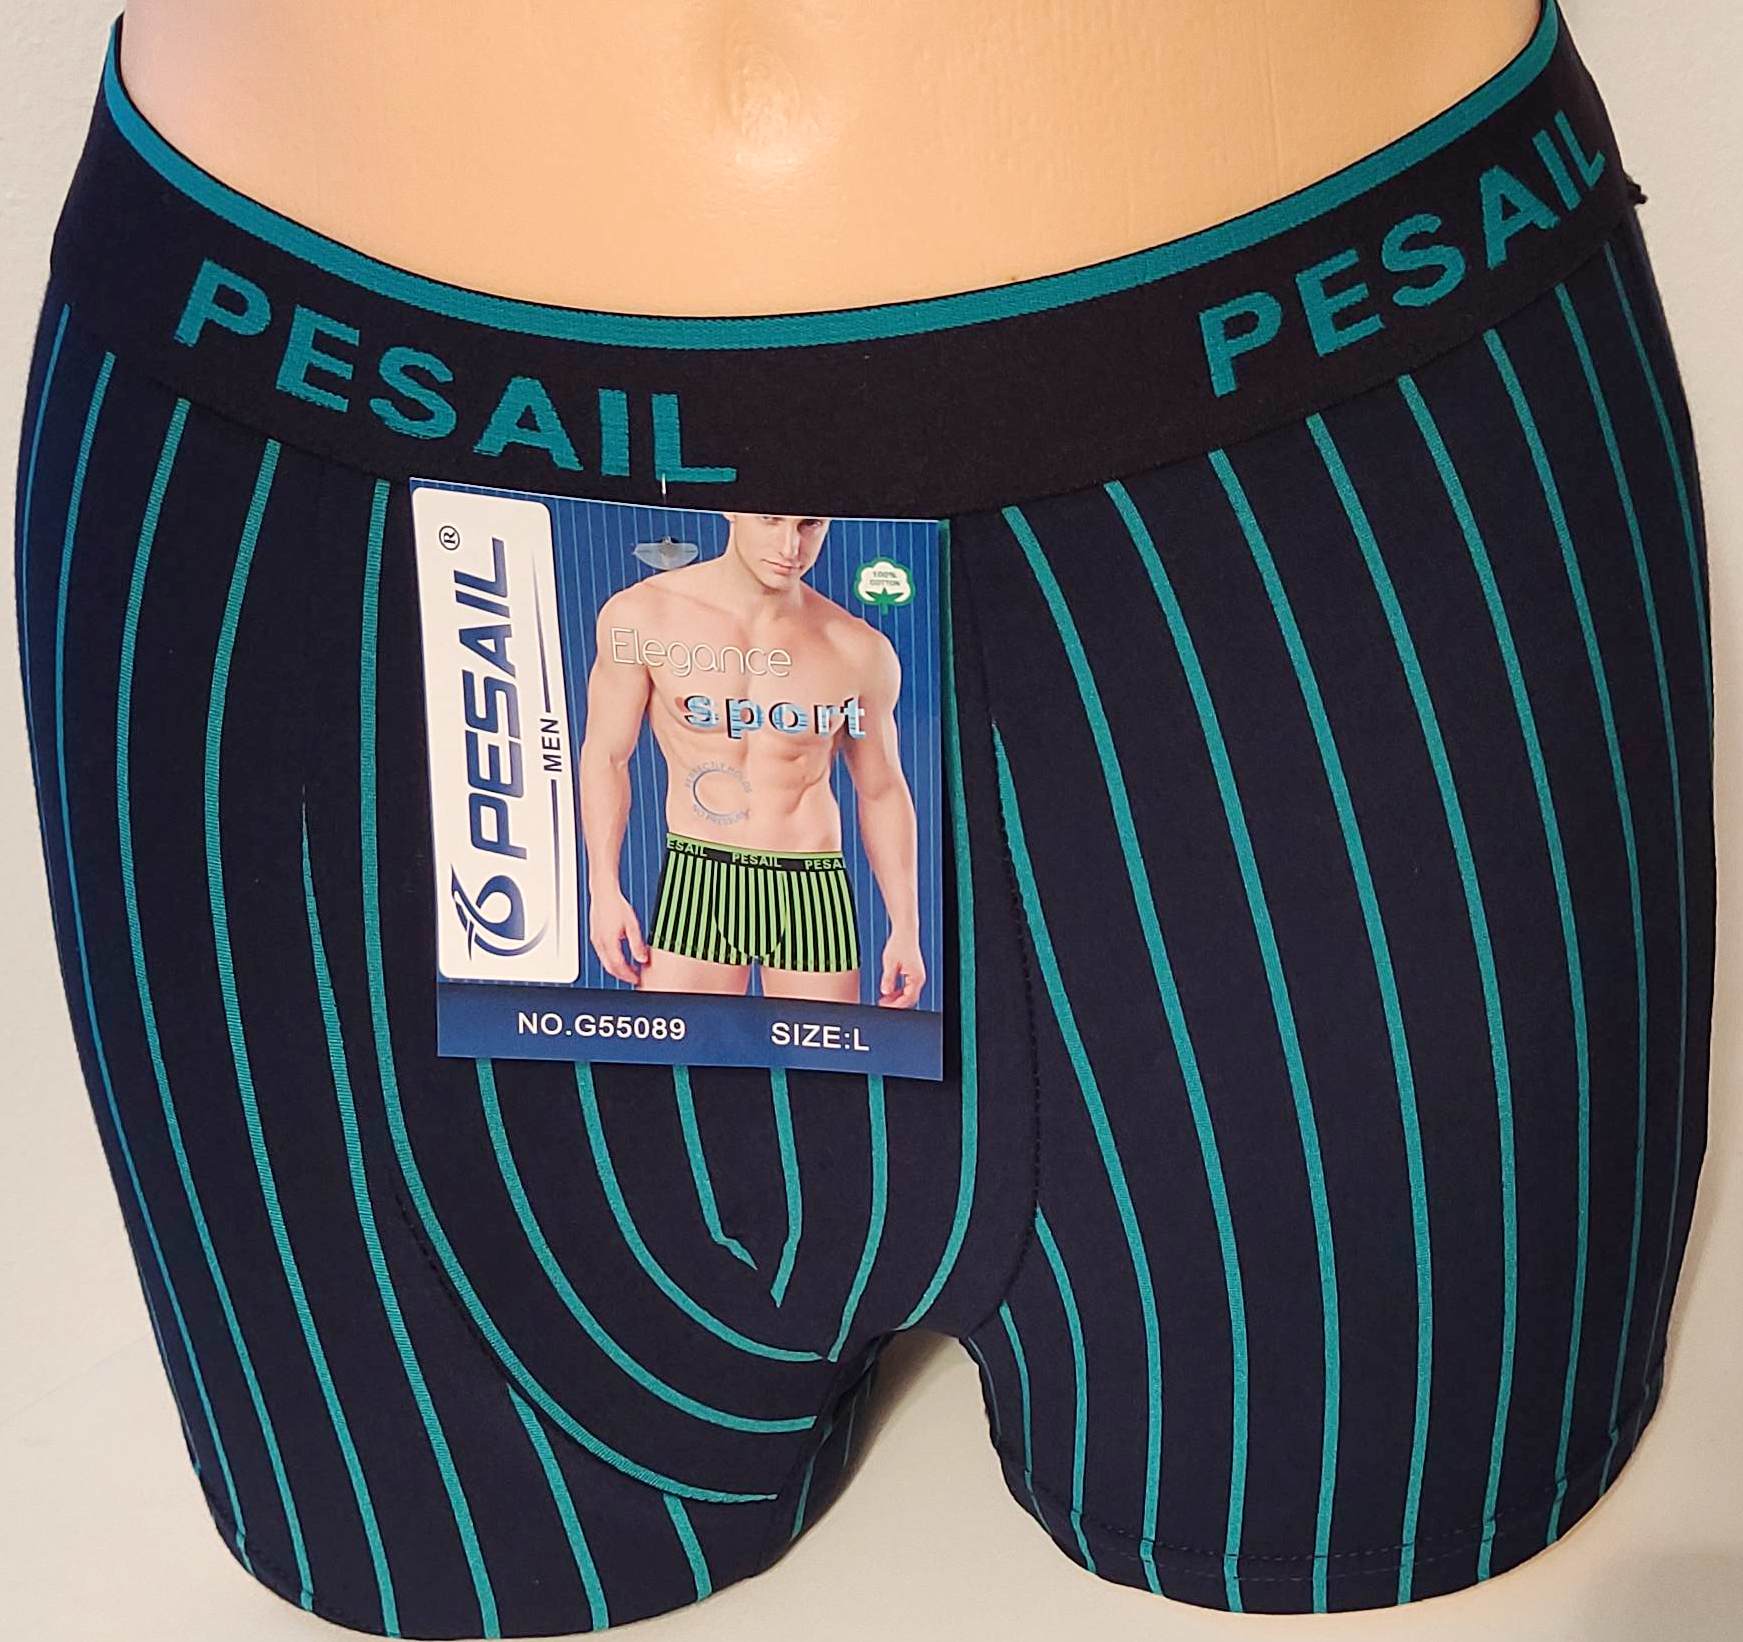 Pánské boxerky PESAIL